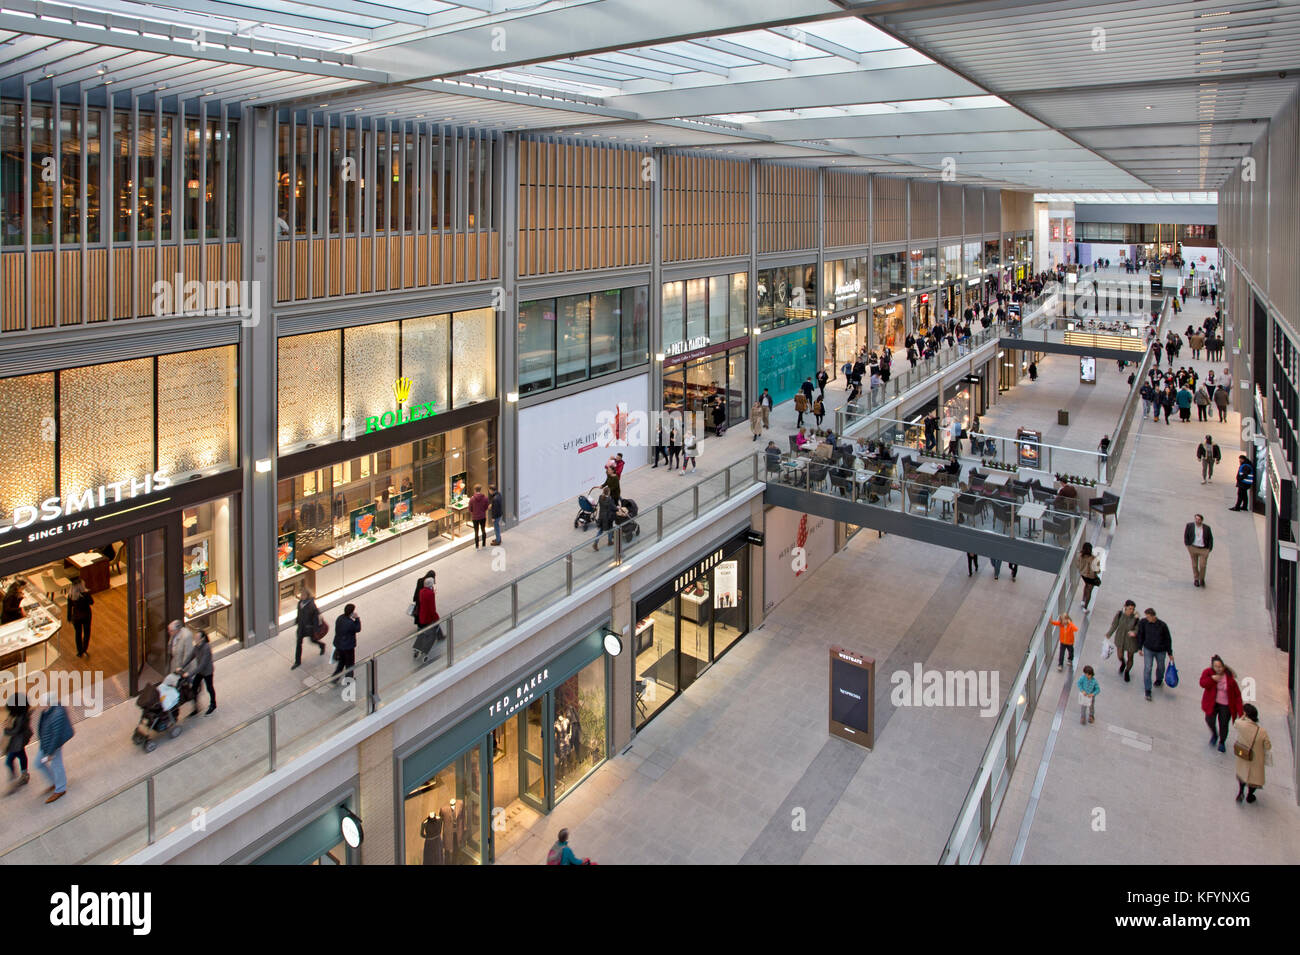 Nuevo centro comercial Westgate,oxford,oxon,Inglaterra Foto de stock